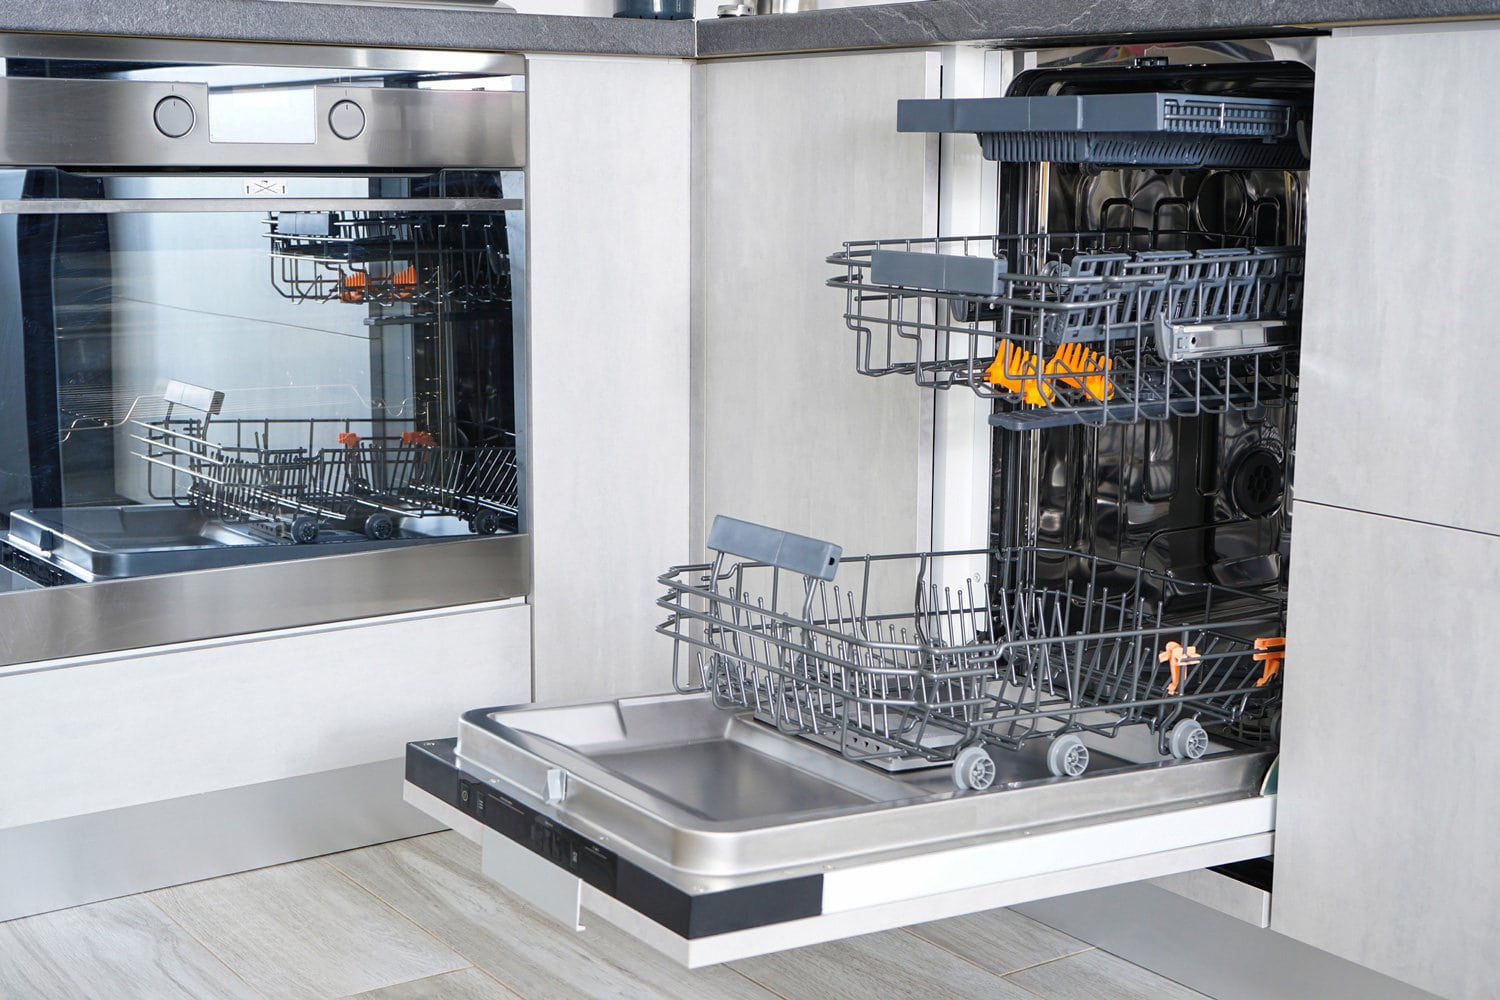 Open, empty dishwasher. Washing dishes in the dishwasher. Open automatic dishwasher.